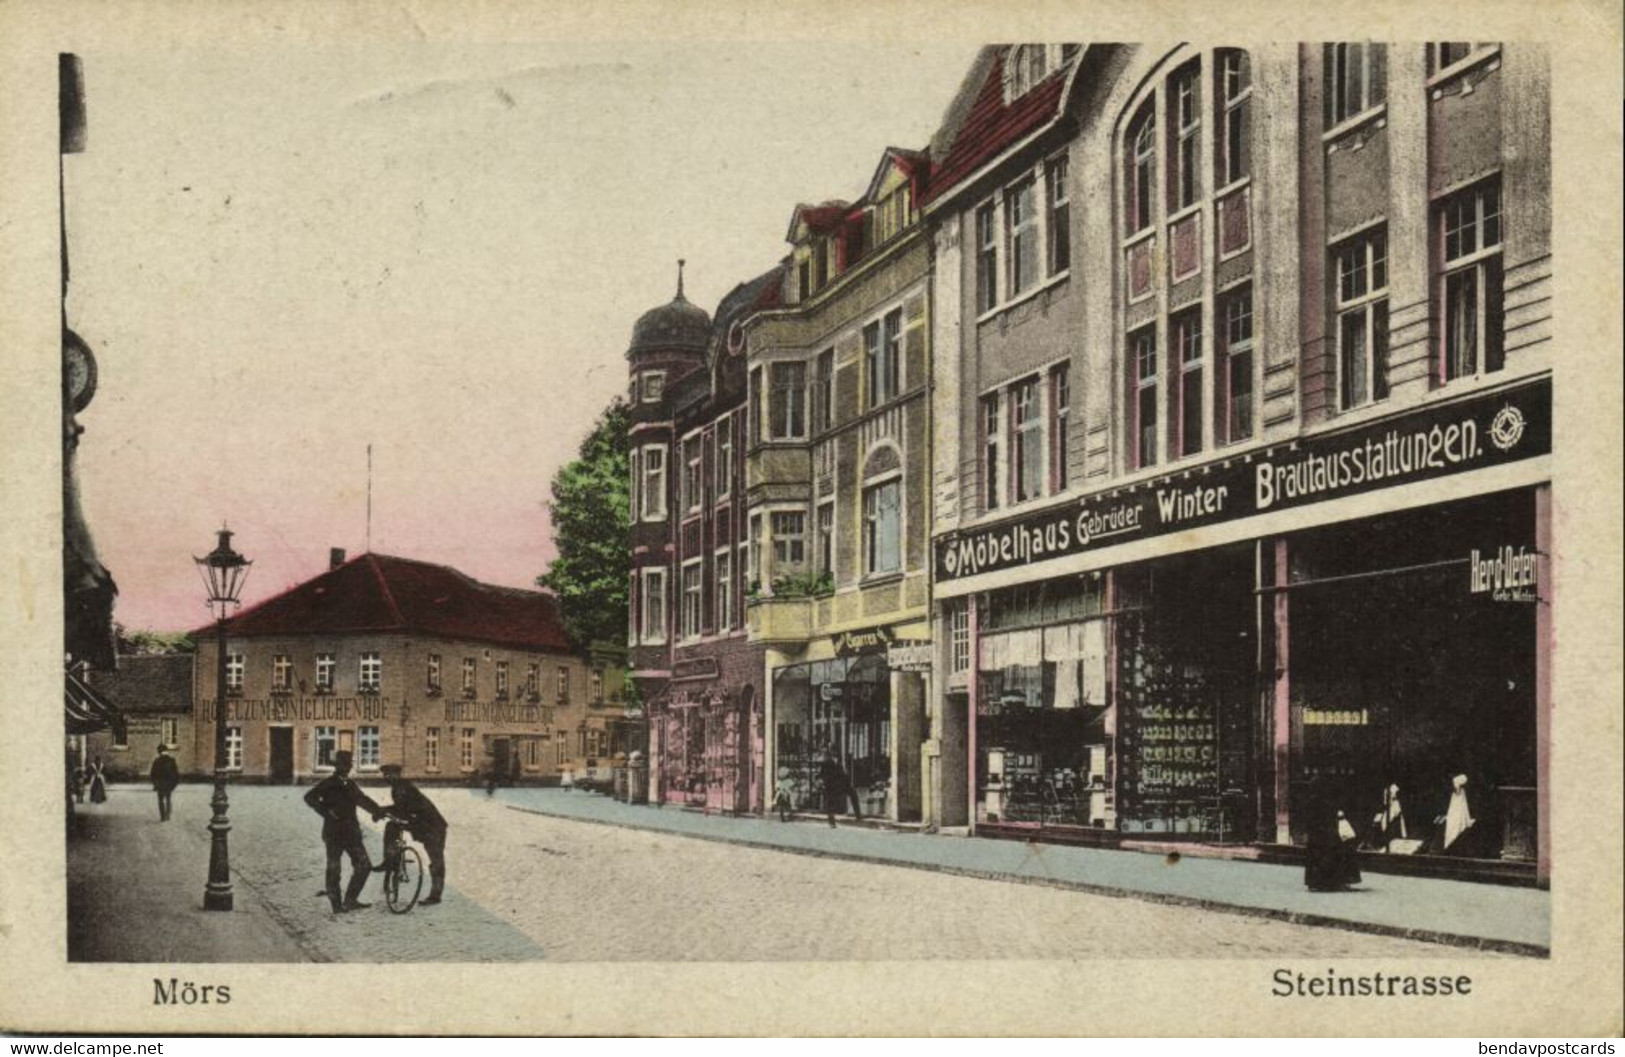 MÖRS MOERS, Steinstrasse, Möbelhaus Gebr. Winter (1919) AK - Mörs